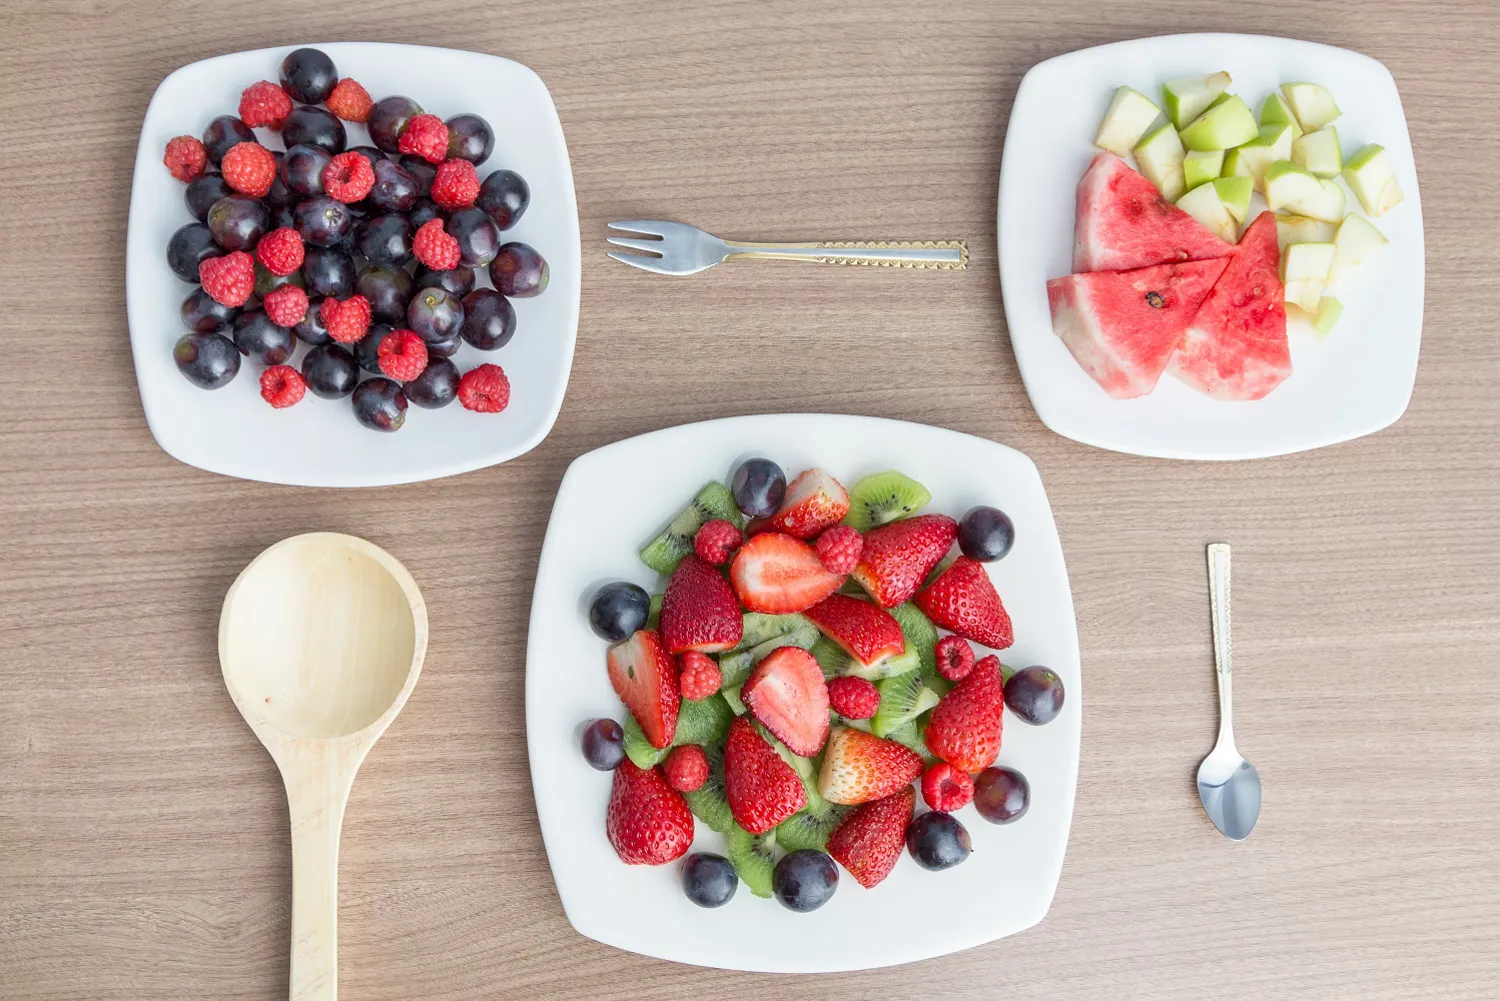 Et bord med tallerkener med frukt og bær